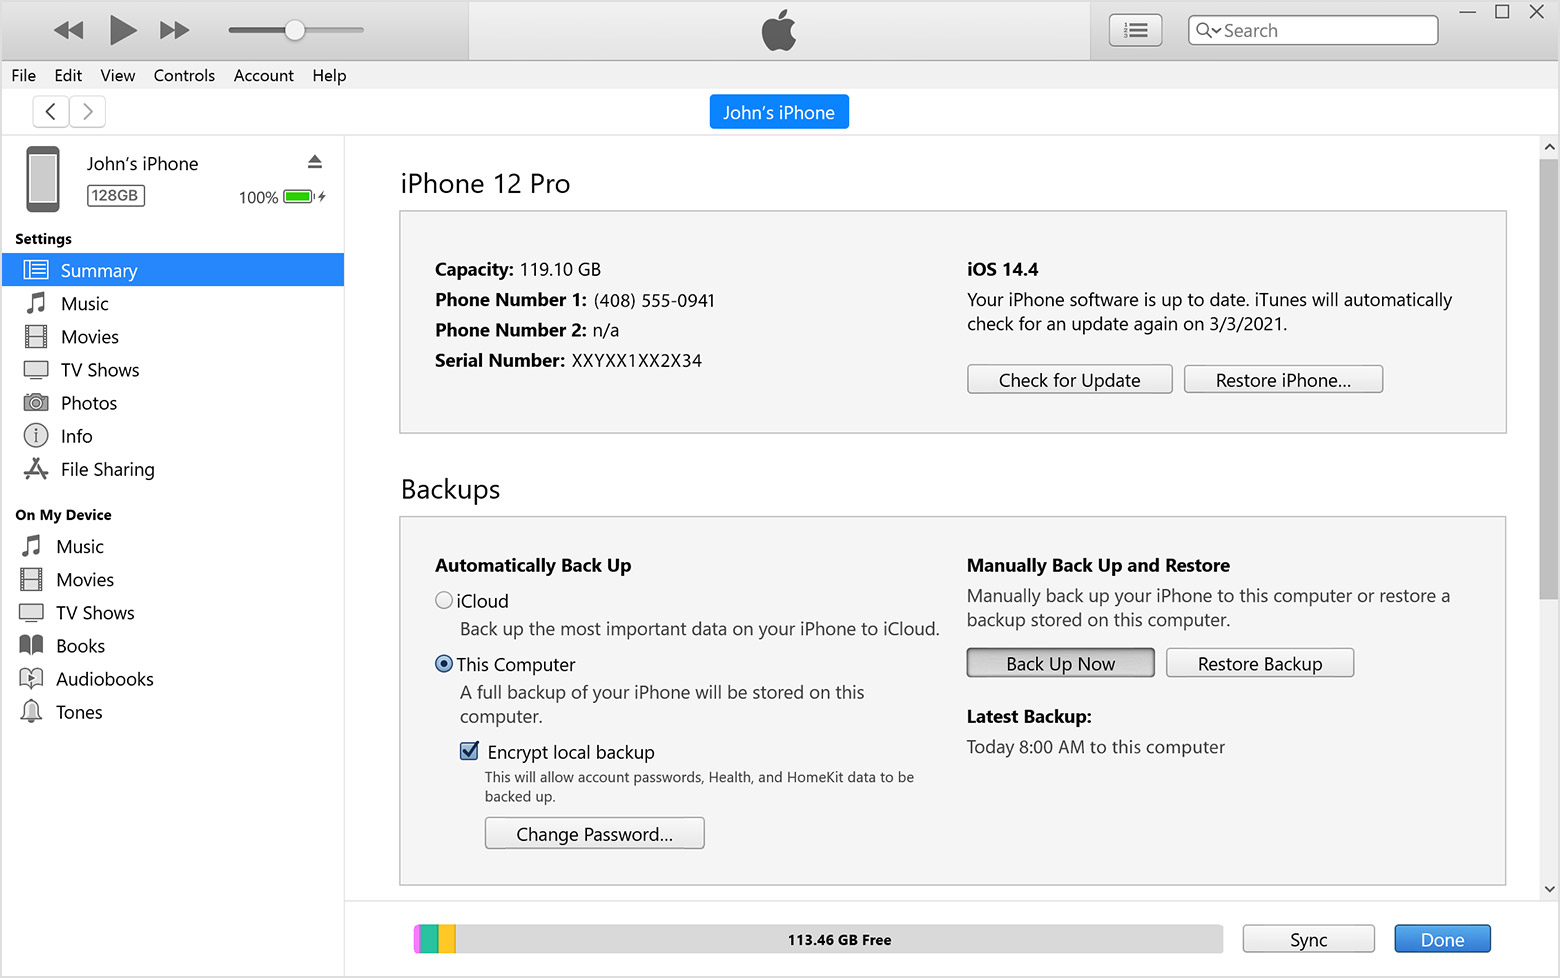 نافذة iTunes تعرض علامة التبويب "الملخص" وفيها تم تحديد زر "نسخ احتياطي الآن"